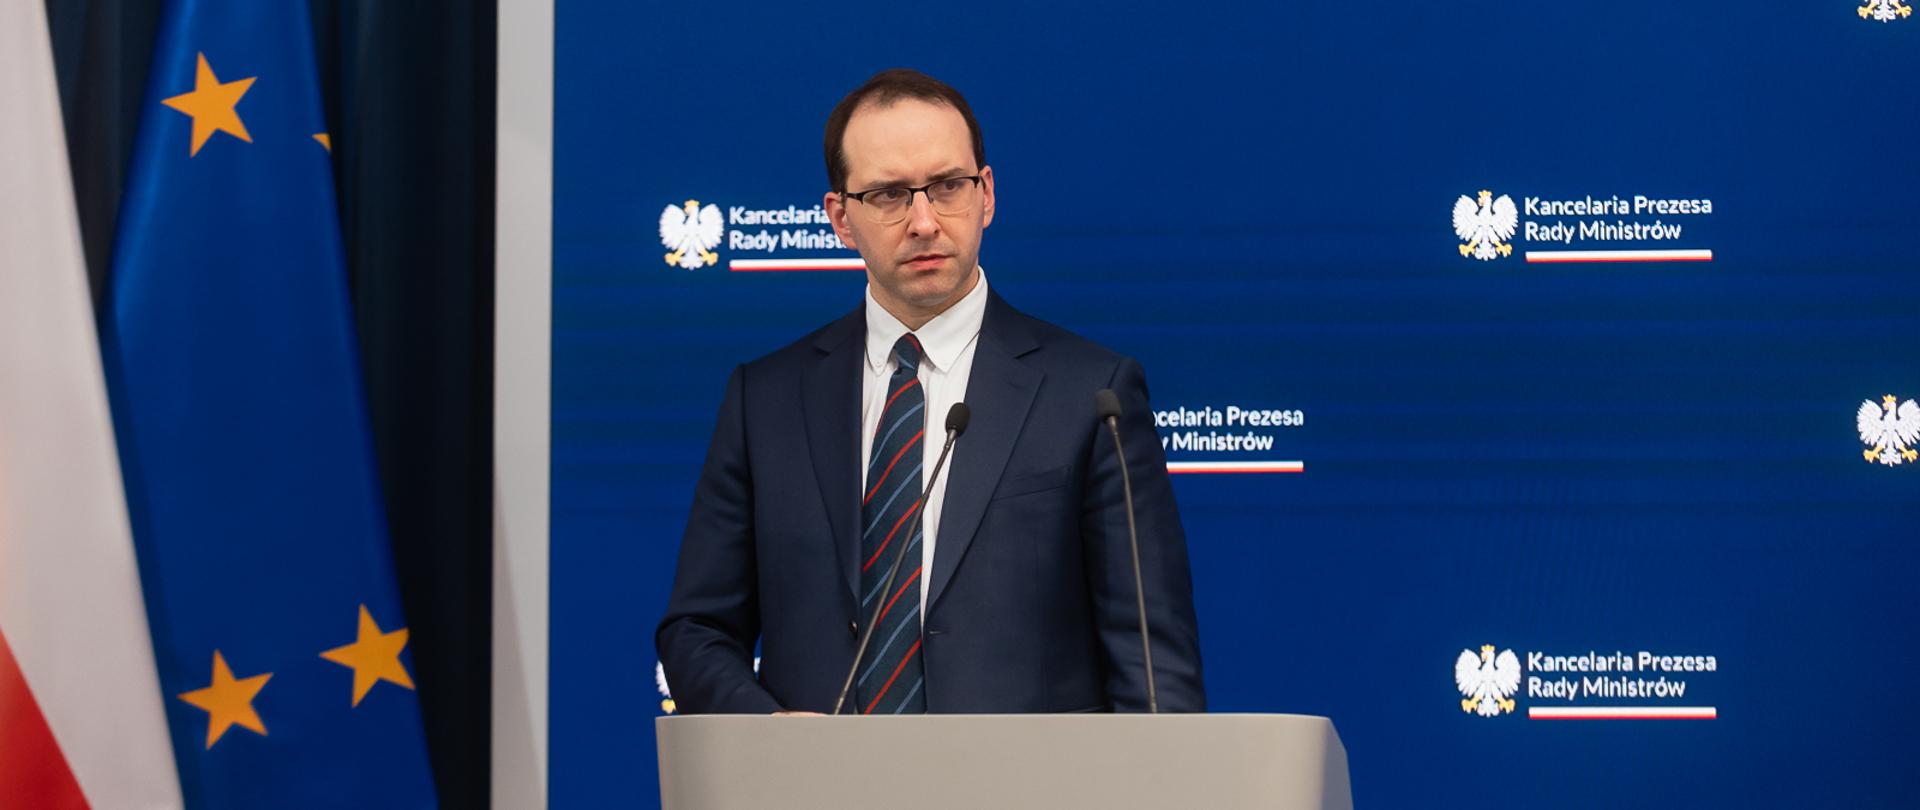 Minister Stanisław Żaryn na tle granatowego tła z logo KPRM podczas konferencji prasowej